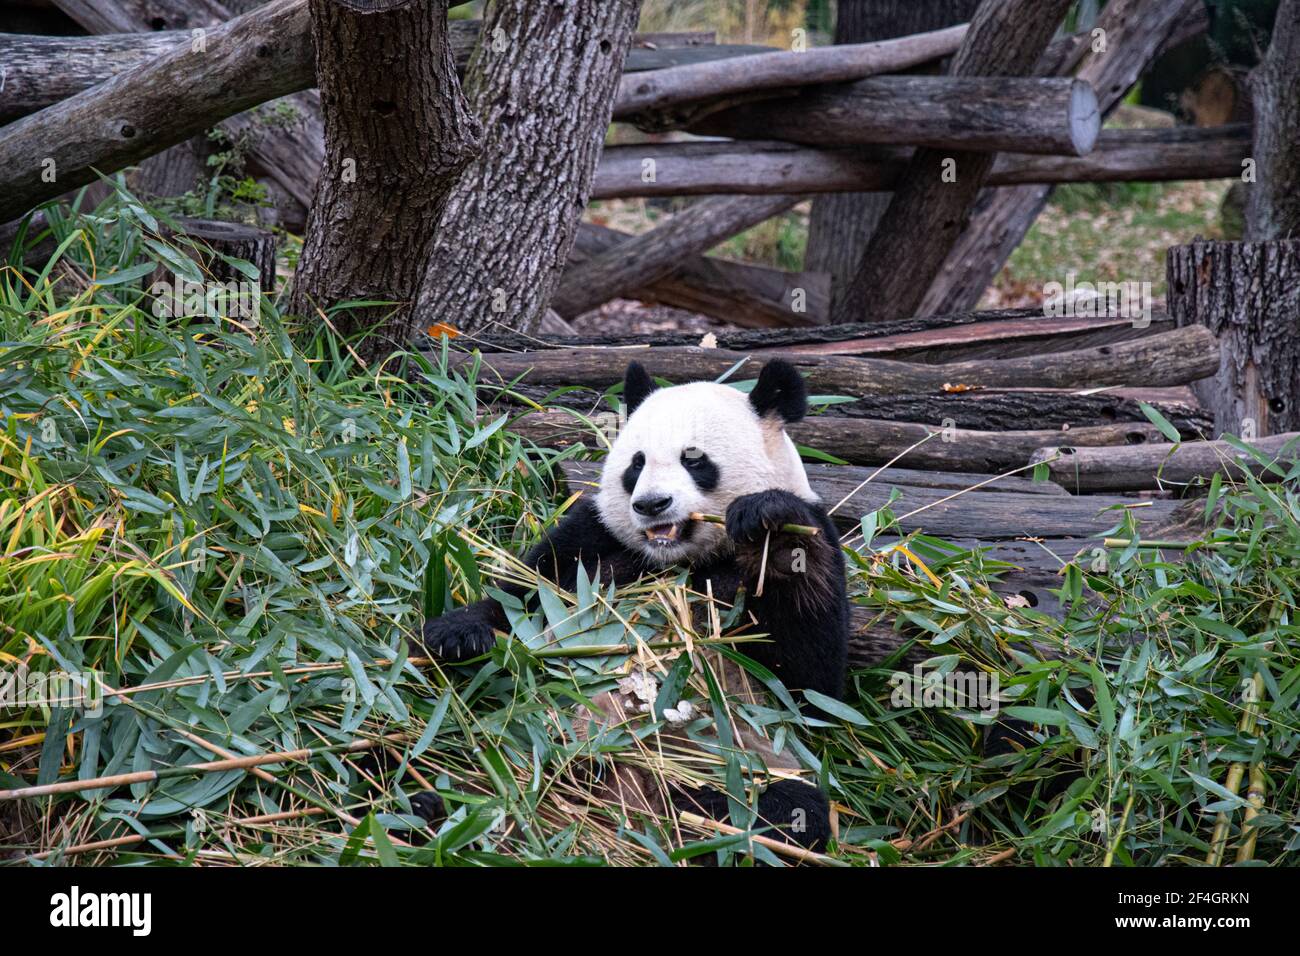 Netter Pandabär sitzt zwischen Bambuszweigen und hält Ast in Pfote, um durch starke Zähne zu beißen. Panda frisst Bambus in natürlichen Lebensräumen. Tier w Stockfoto